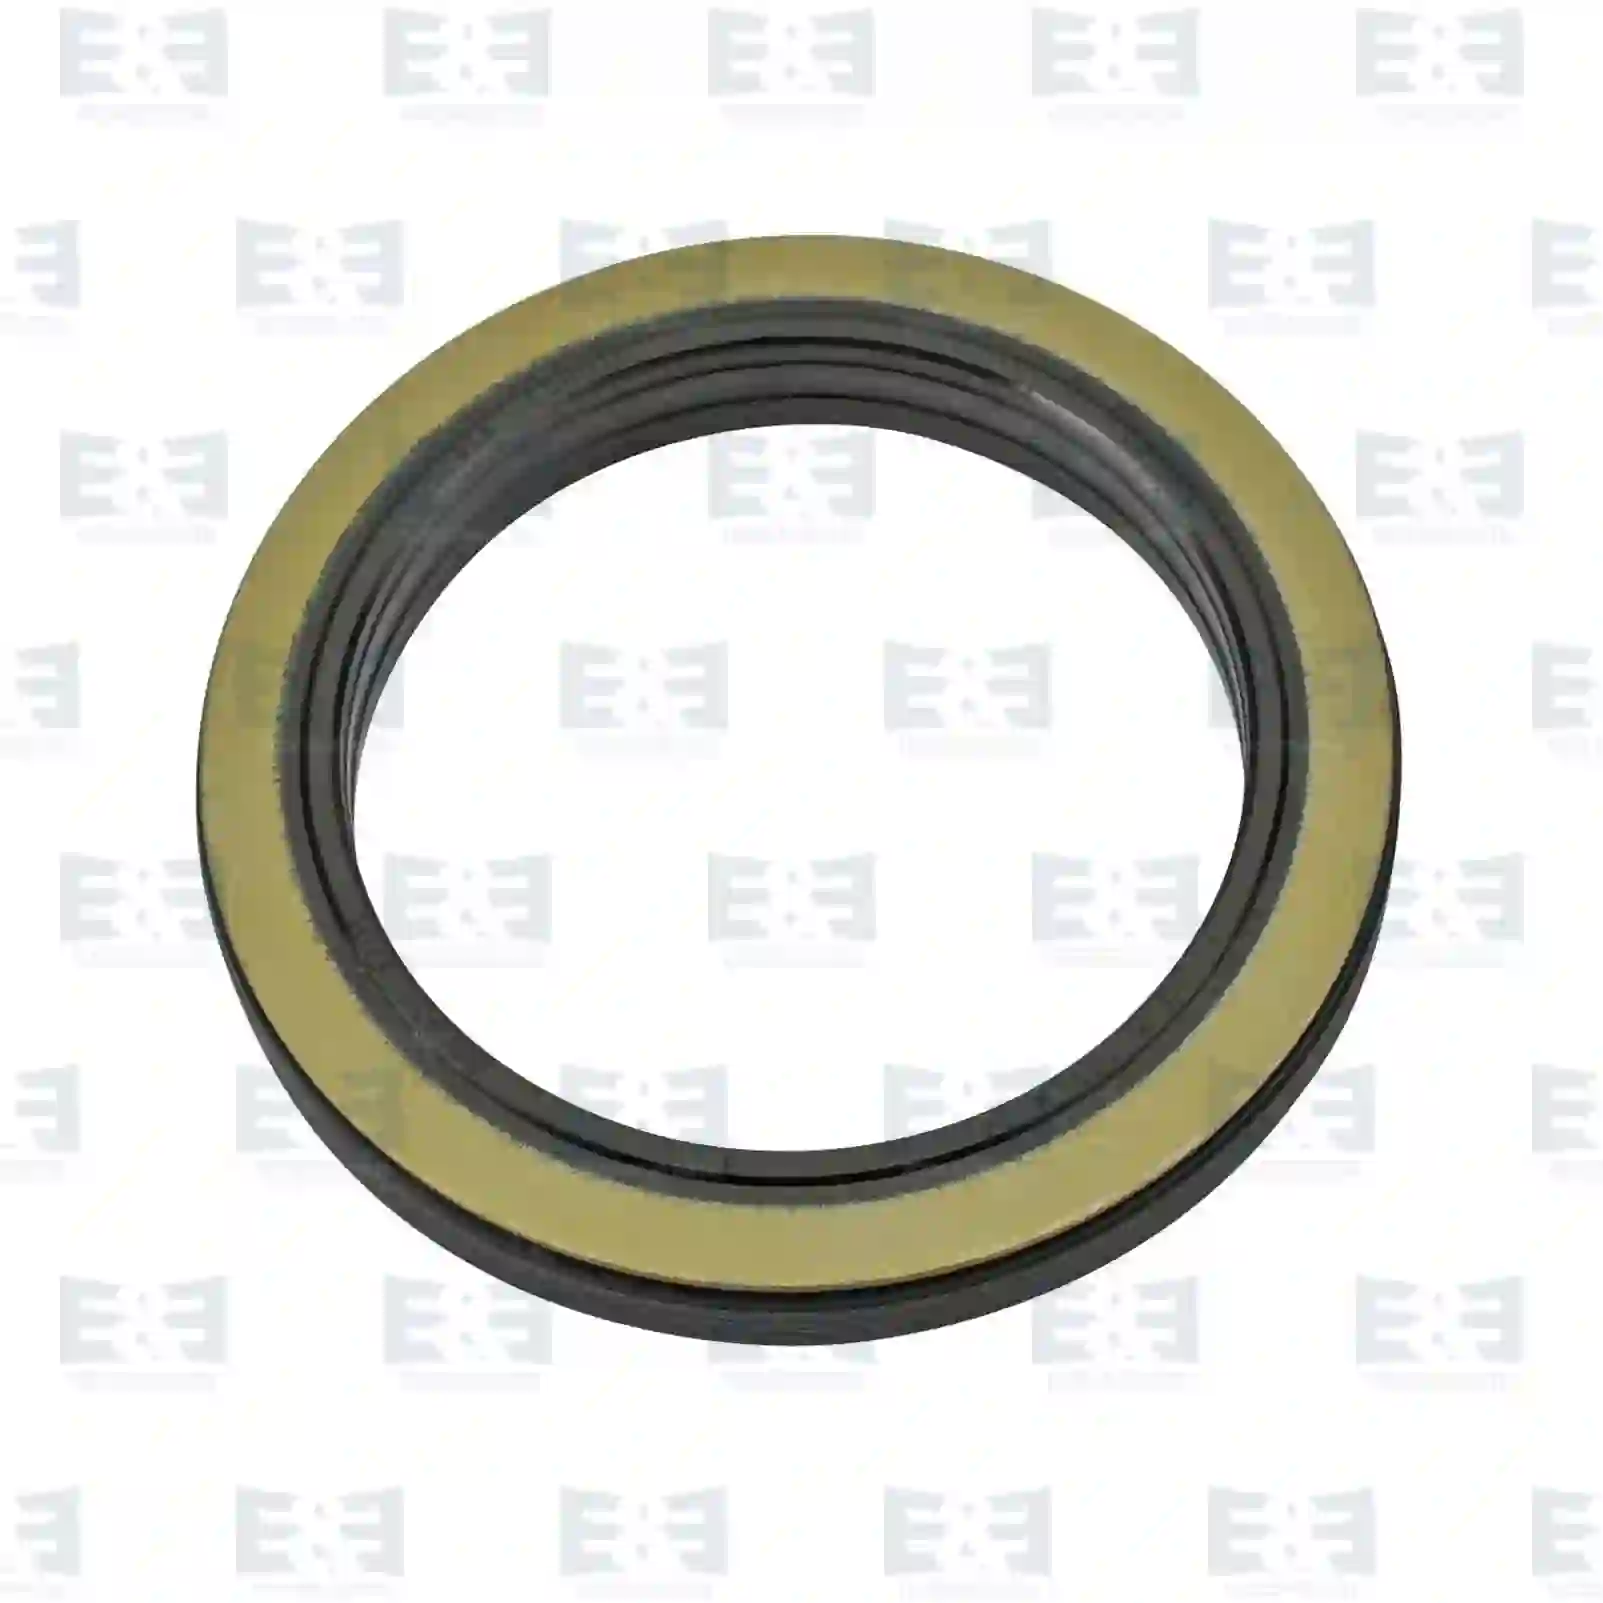 Hub Oil seal, EE No 2E2284035 ,  oem no:1313719, 1409890, 2057586, ZG02614-0008 E&E Truck Spare Parts | Truck Spare Parts, Auotomotive Spare Parts